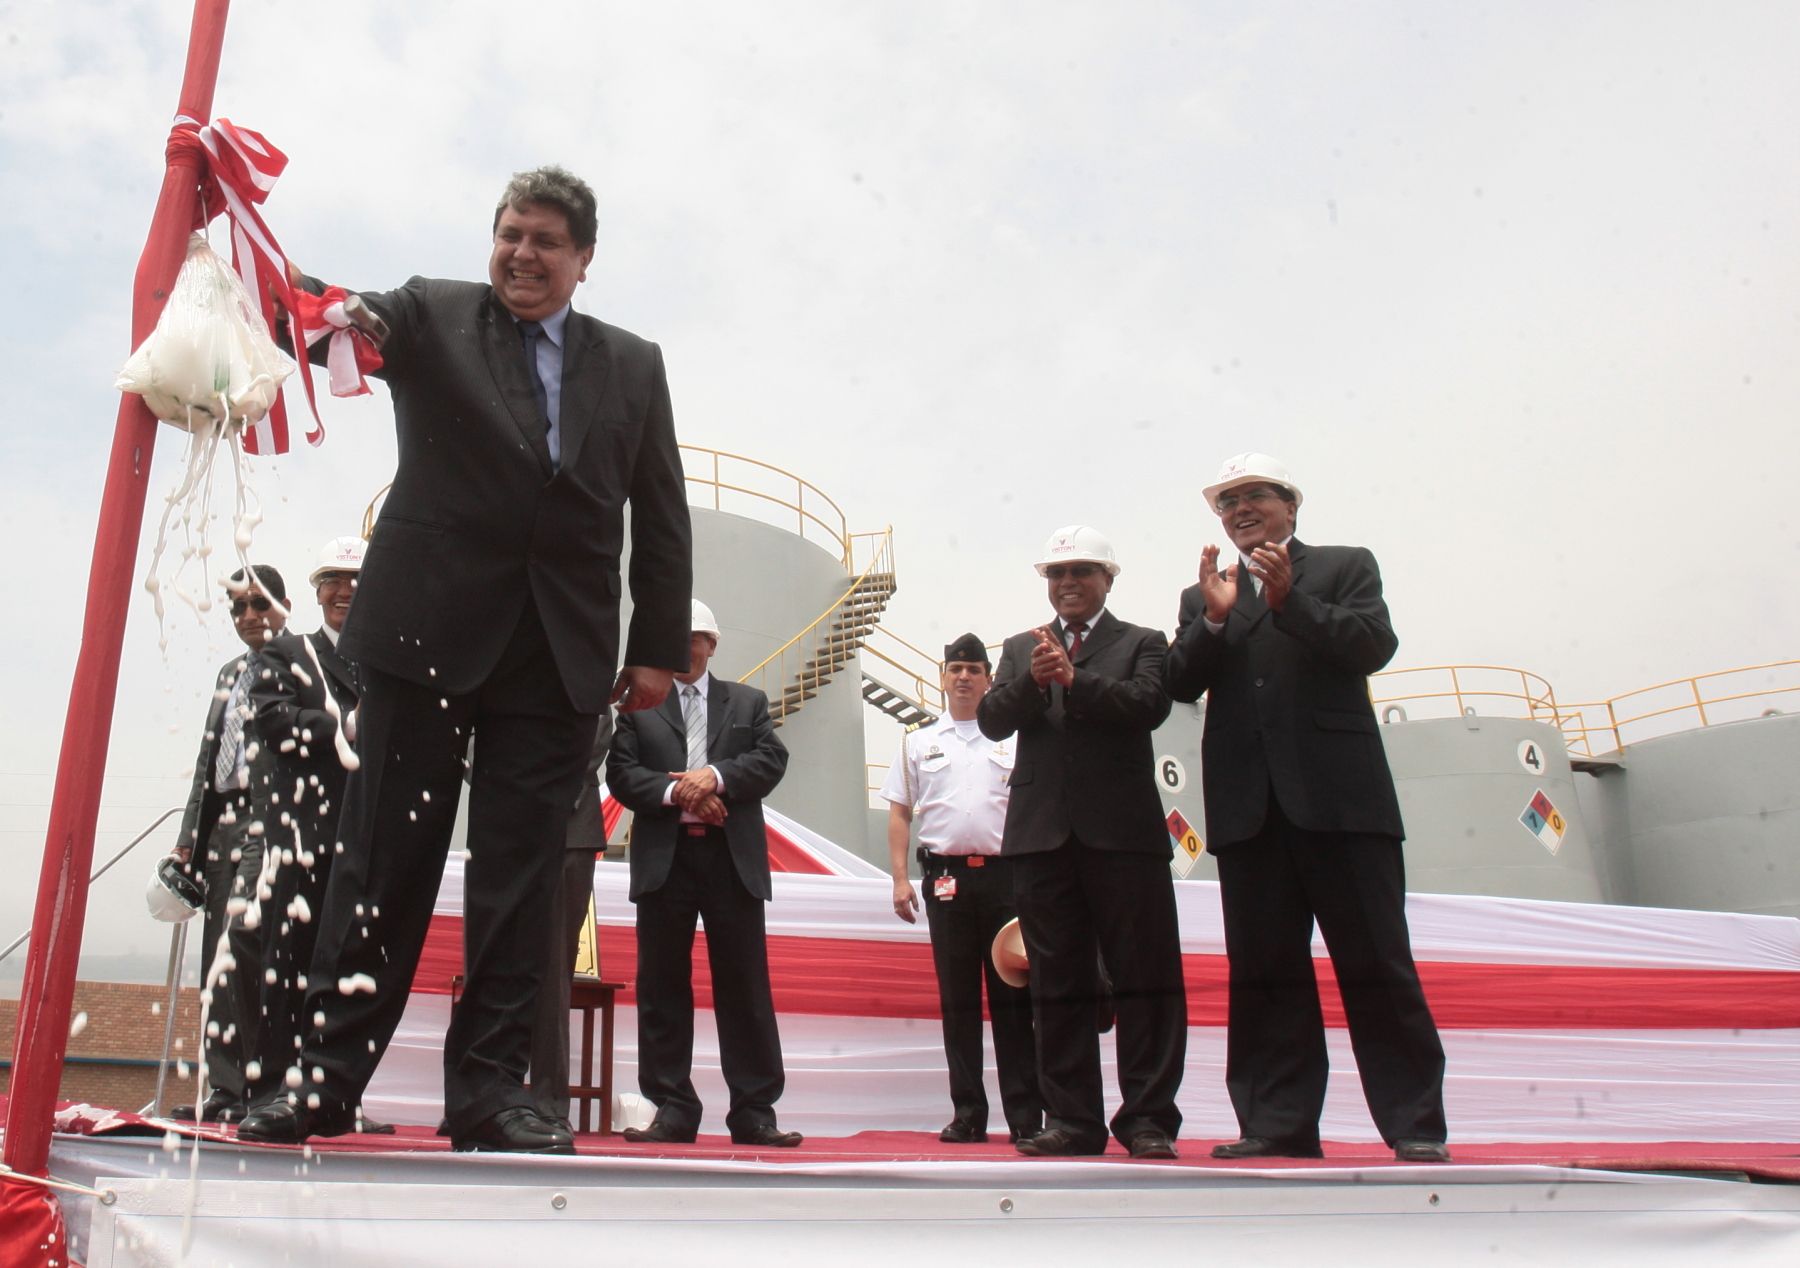 Presidente de la República, Alan García, asiste a ceremonia de inauguración de planta de lubricantes Vistony, en el distrito de Ancón. Foto:ANDINA/Juan Carlos Guzmán Negrini.